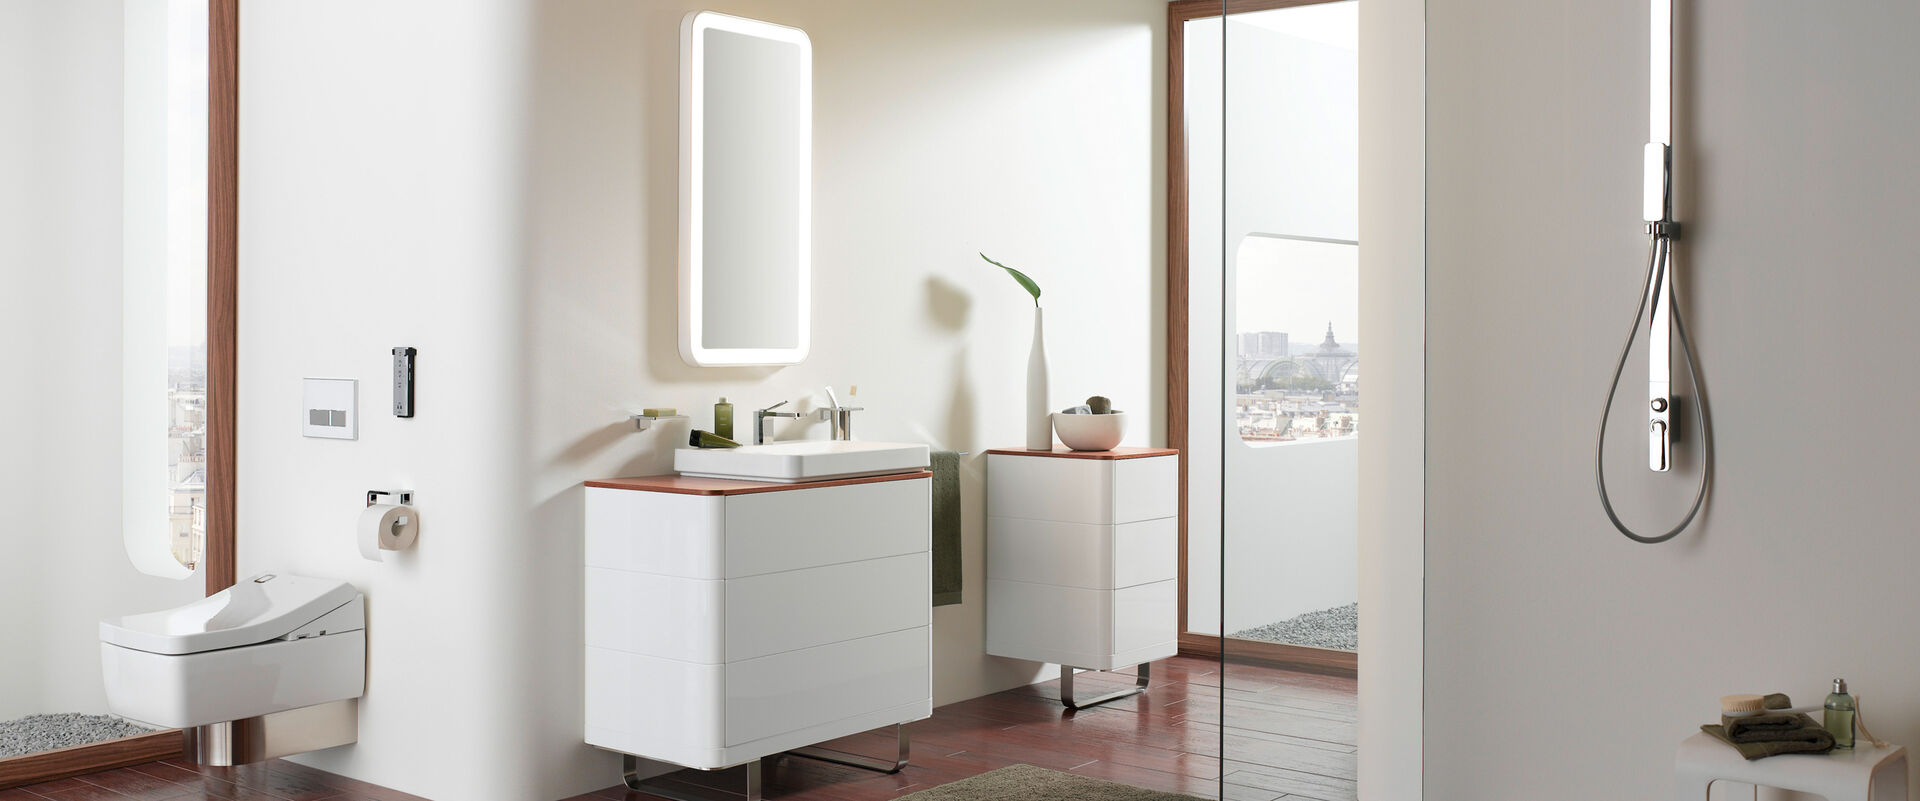 Komplettes Badezimmer in Weiß mit Washlet, Waschplatz, Dusche, Badmöbeln mit Holzplatte.